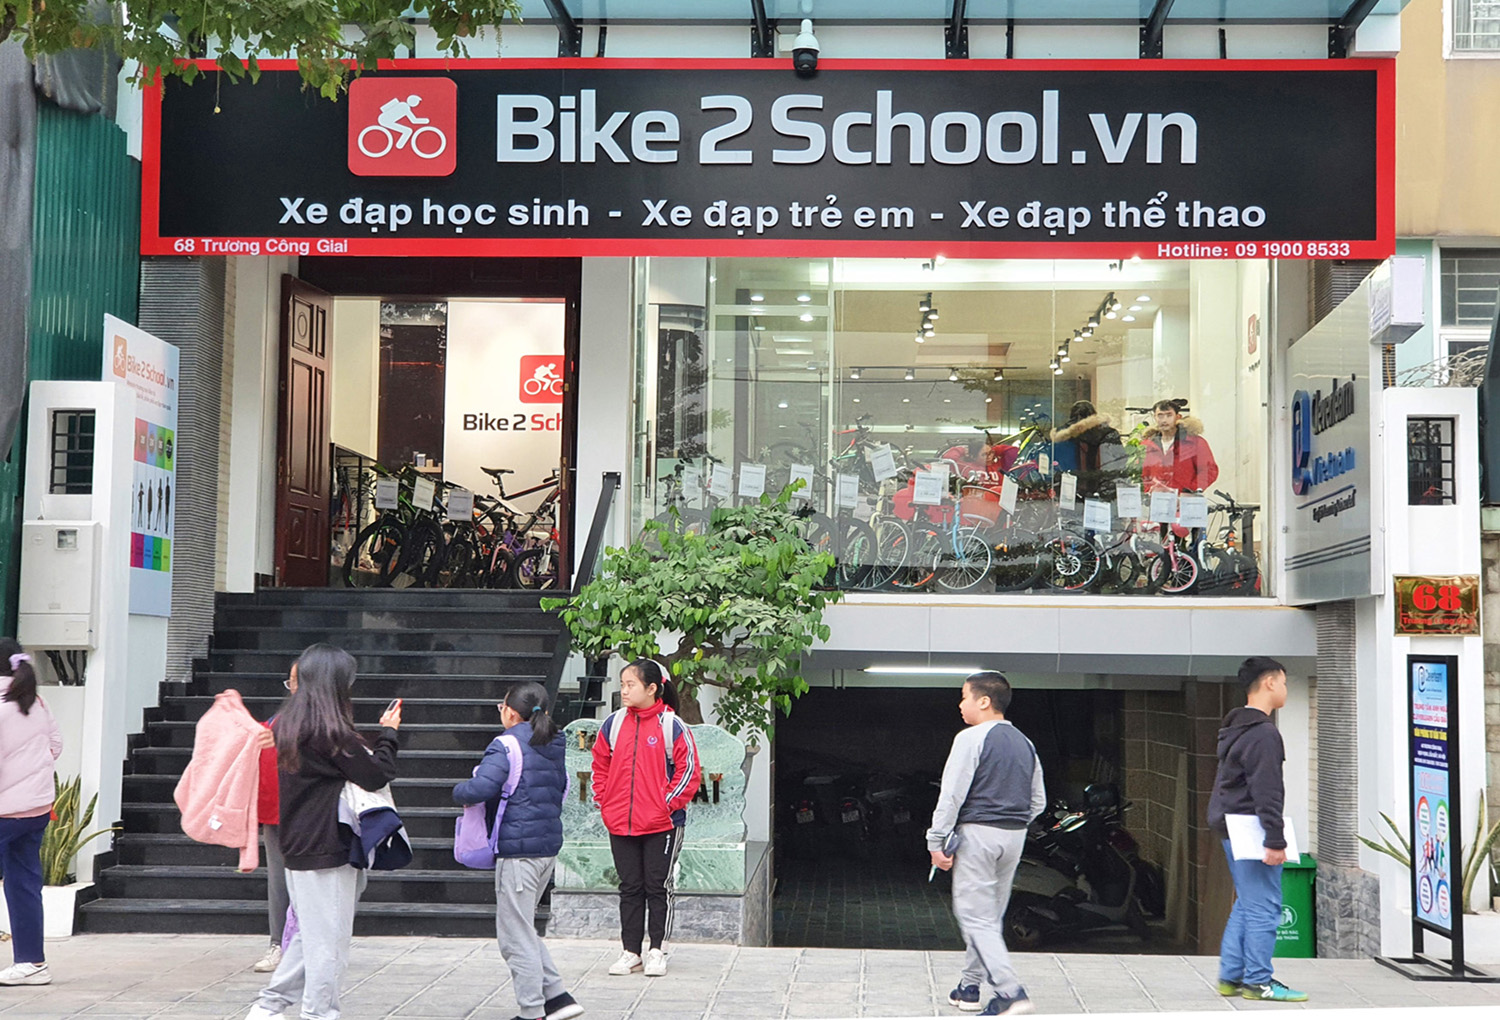 Cua-hang-Bike2school-68-Truong-Cong-Giai